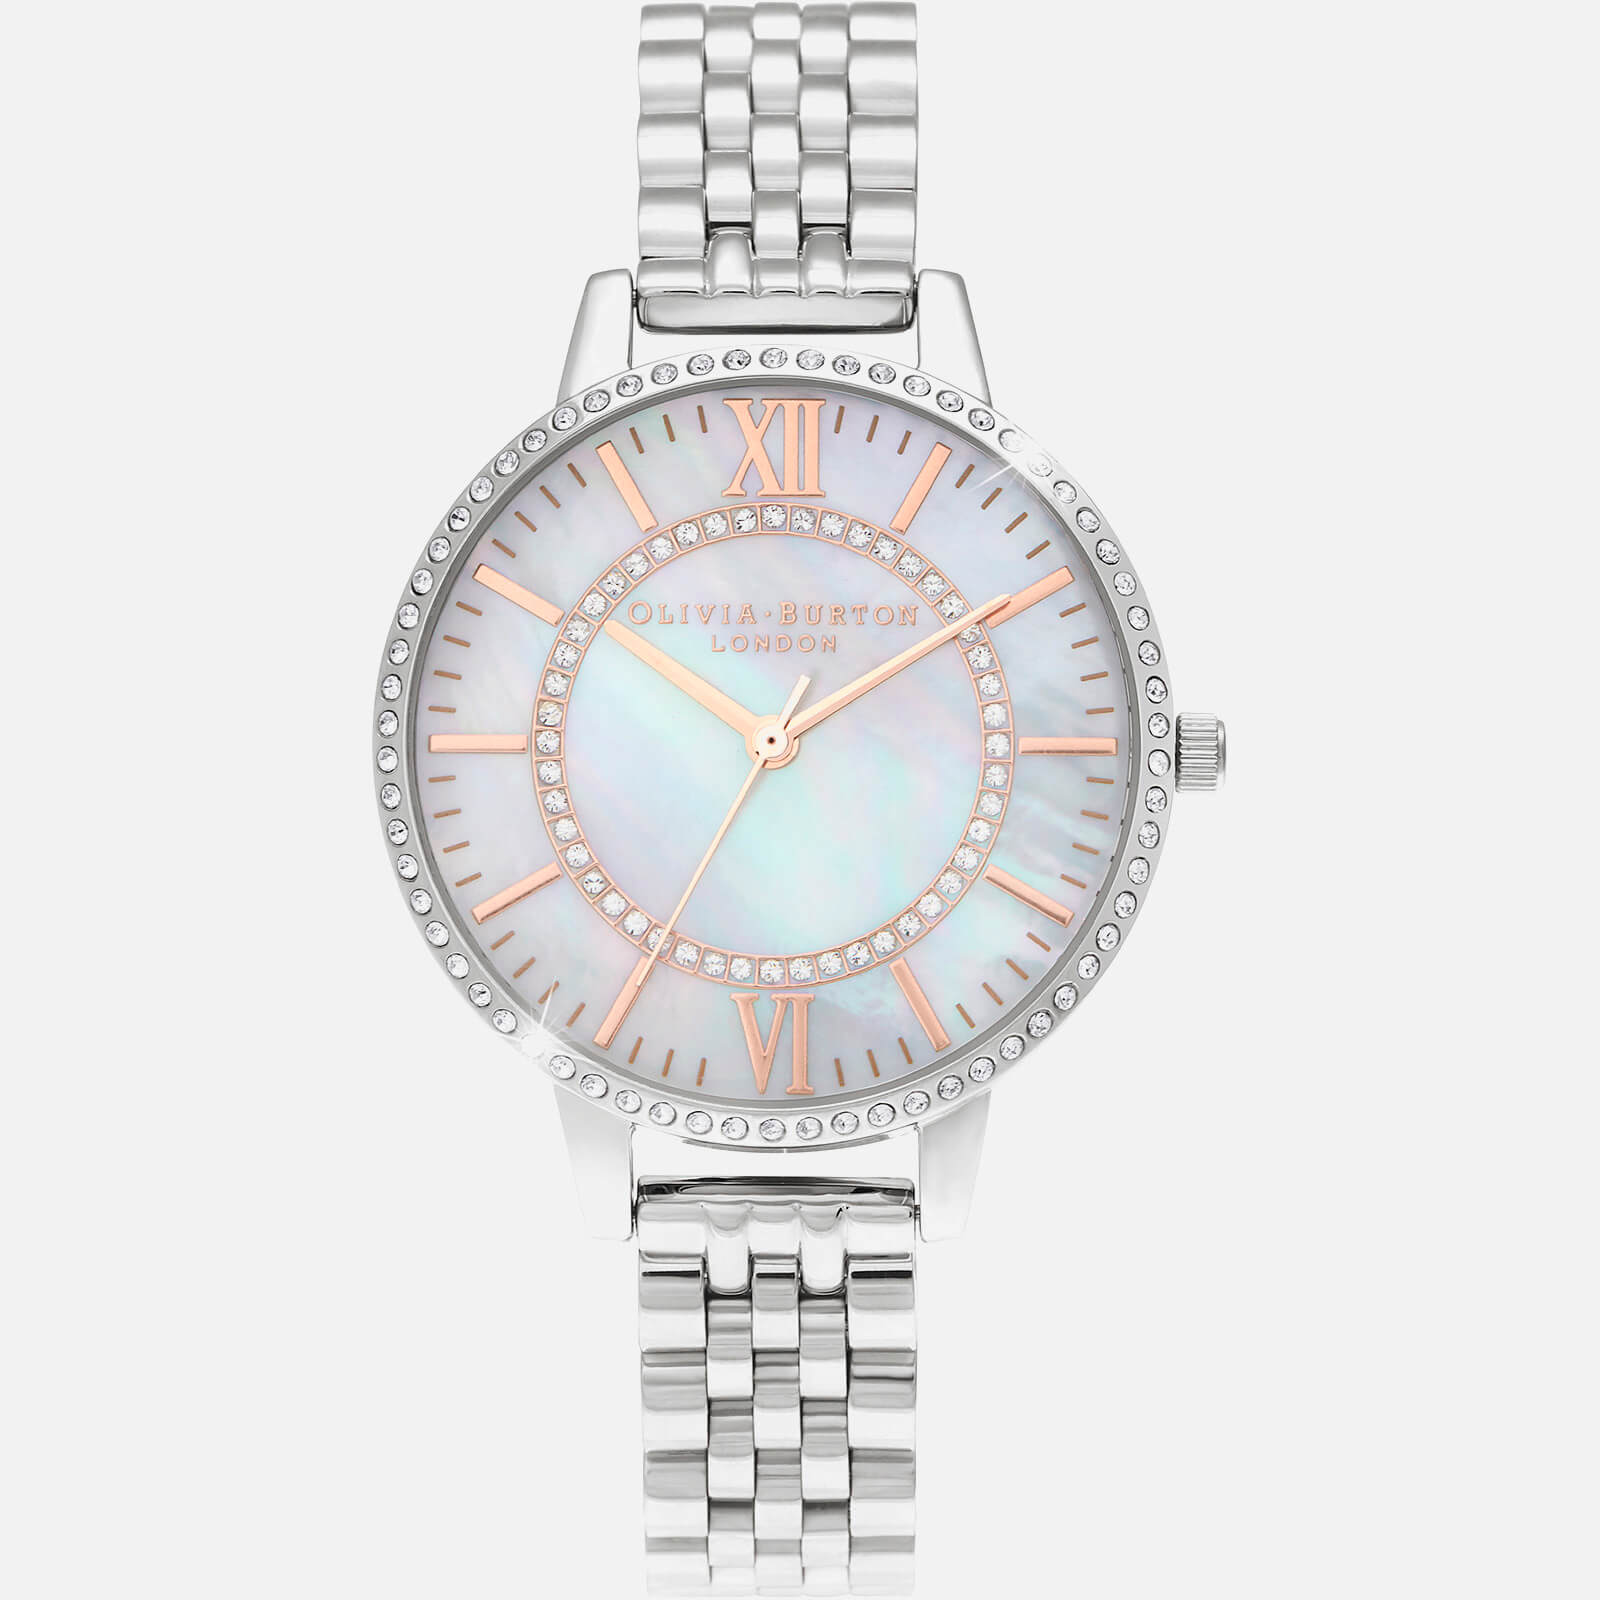 Olivia Burton Women's Wonderland Watch - White & Silver